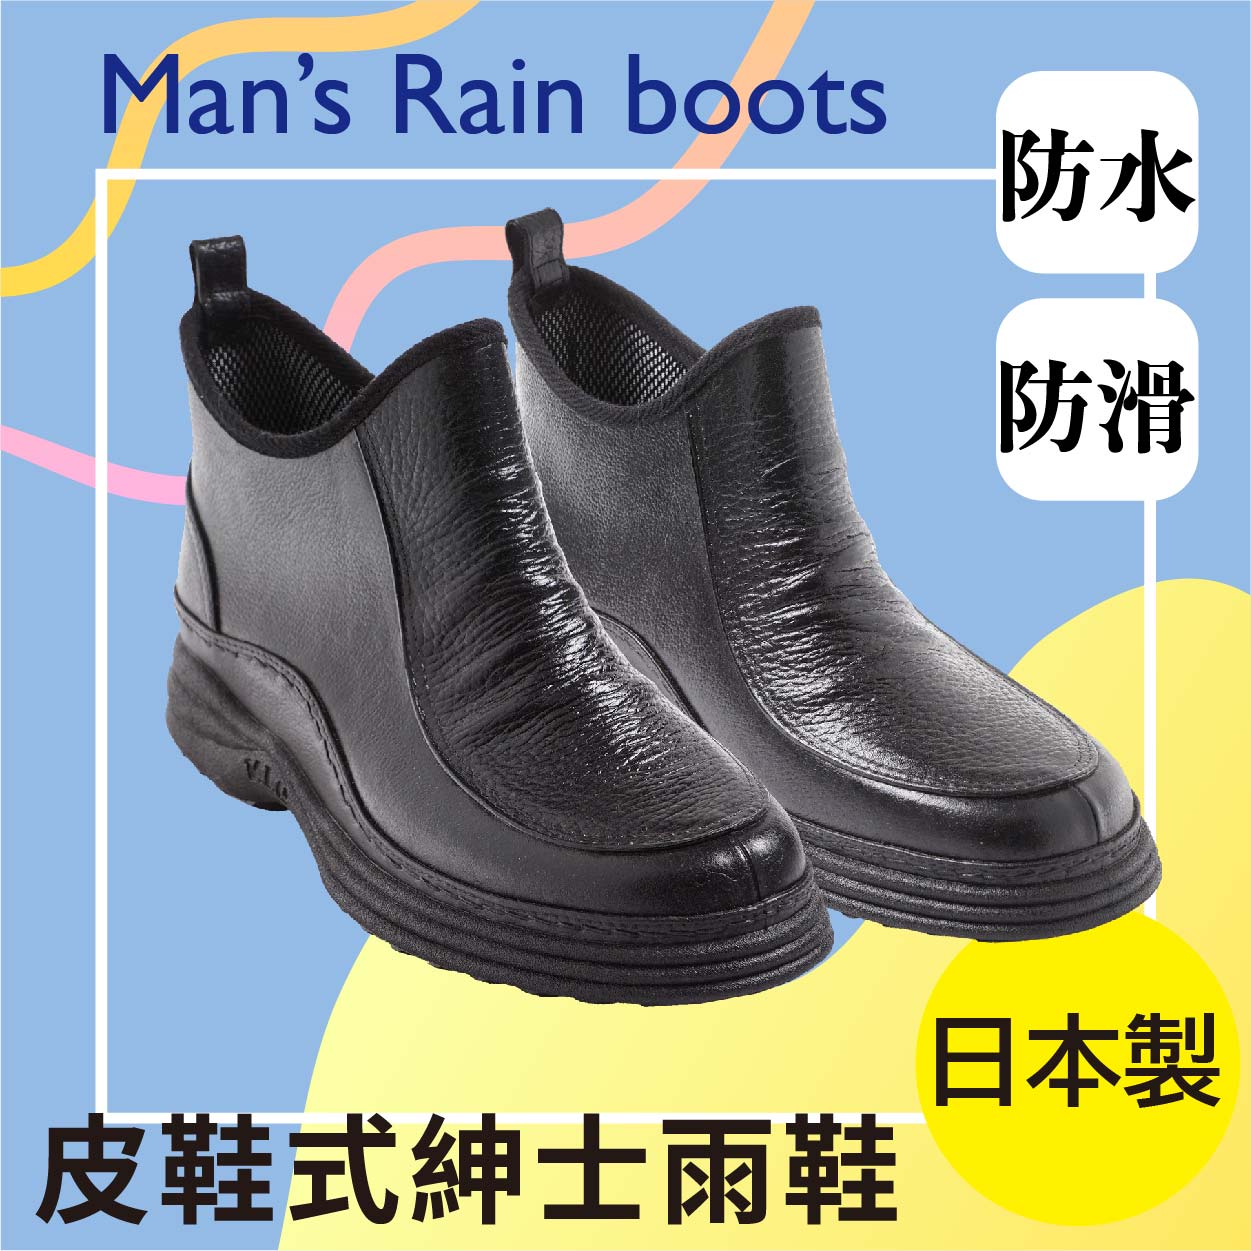 【沙克思】V.IC皮鞋式短筒紳士雨鞋 特性：舒適成型內襯+橡膠防滑鞋底設計 (雨具 靴子 短靴 雨靴 防水短靴 防水靴 防水雨鞋)